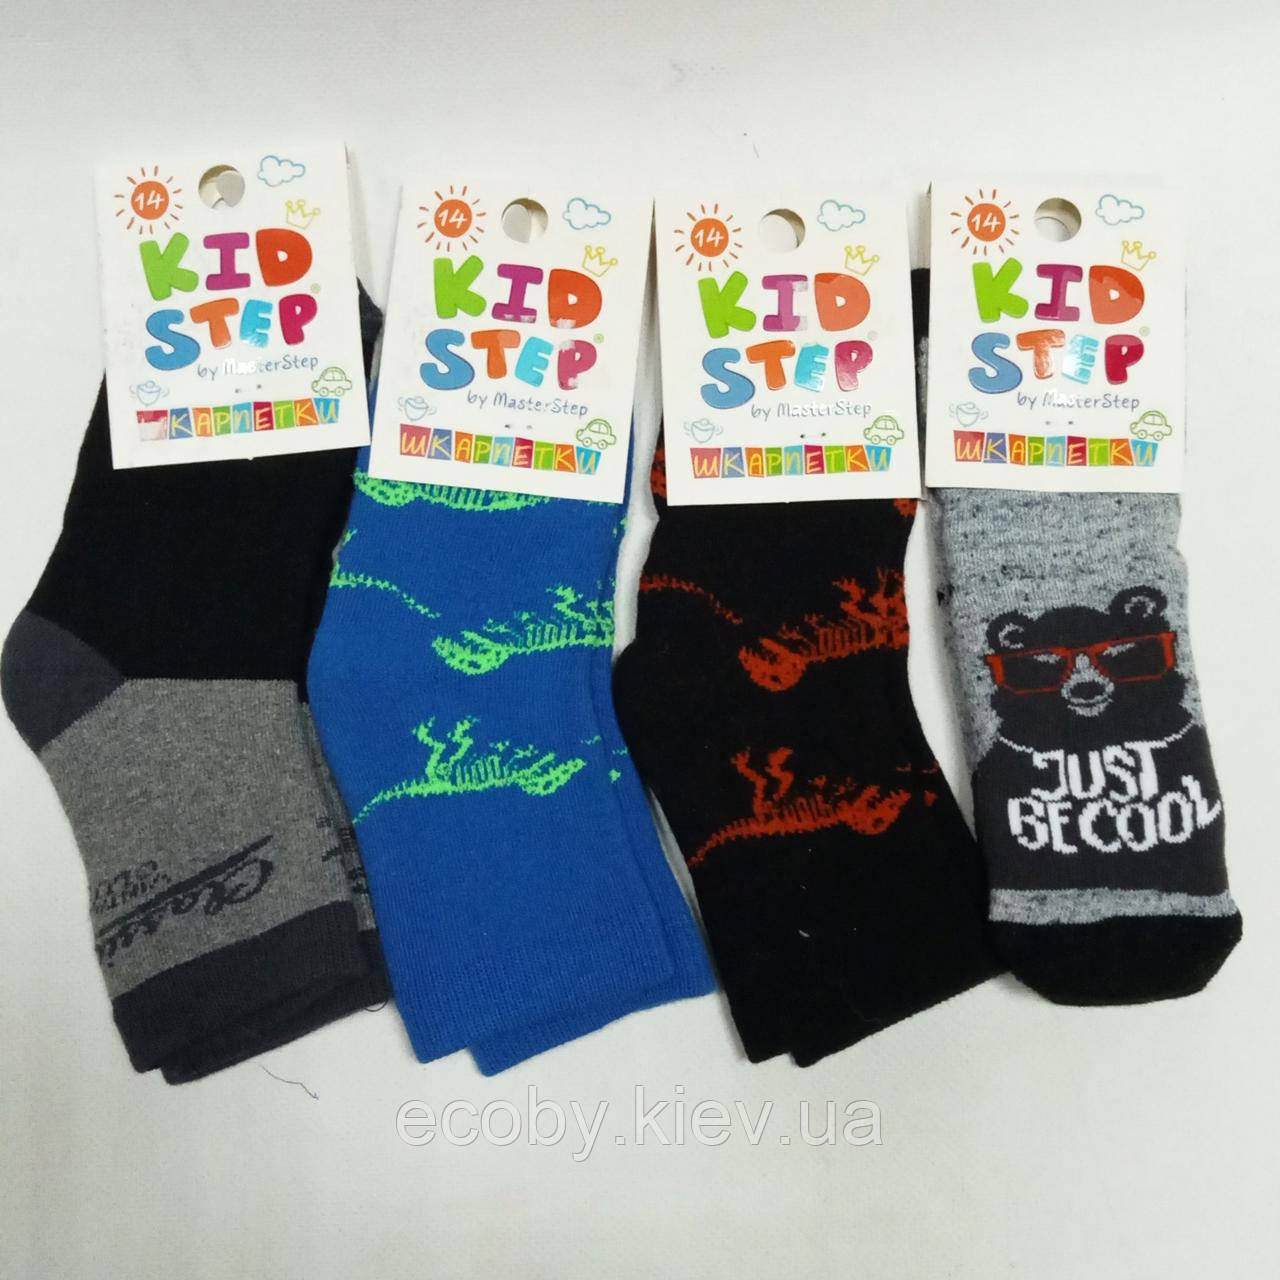 Дитячі шкарпетки  тм Kid Step, розміри 23 - 25, махрові